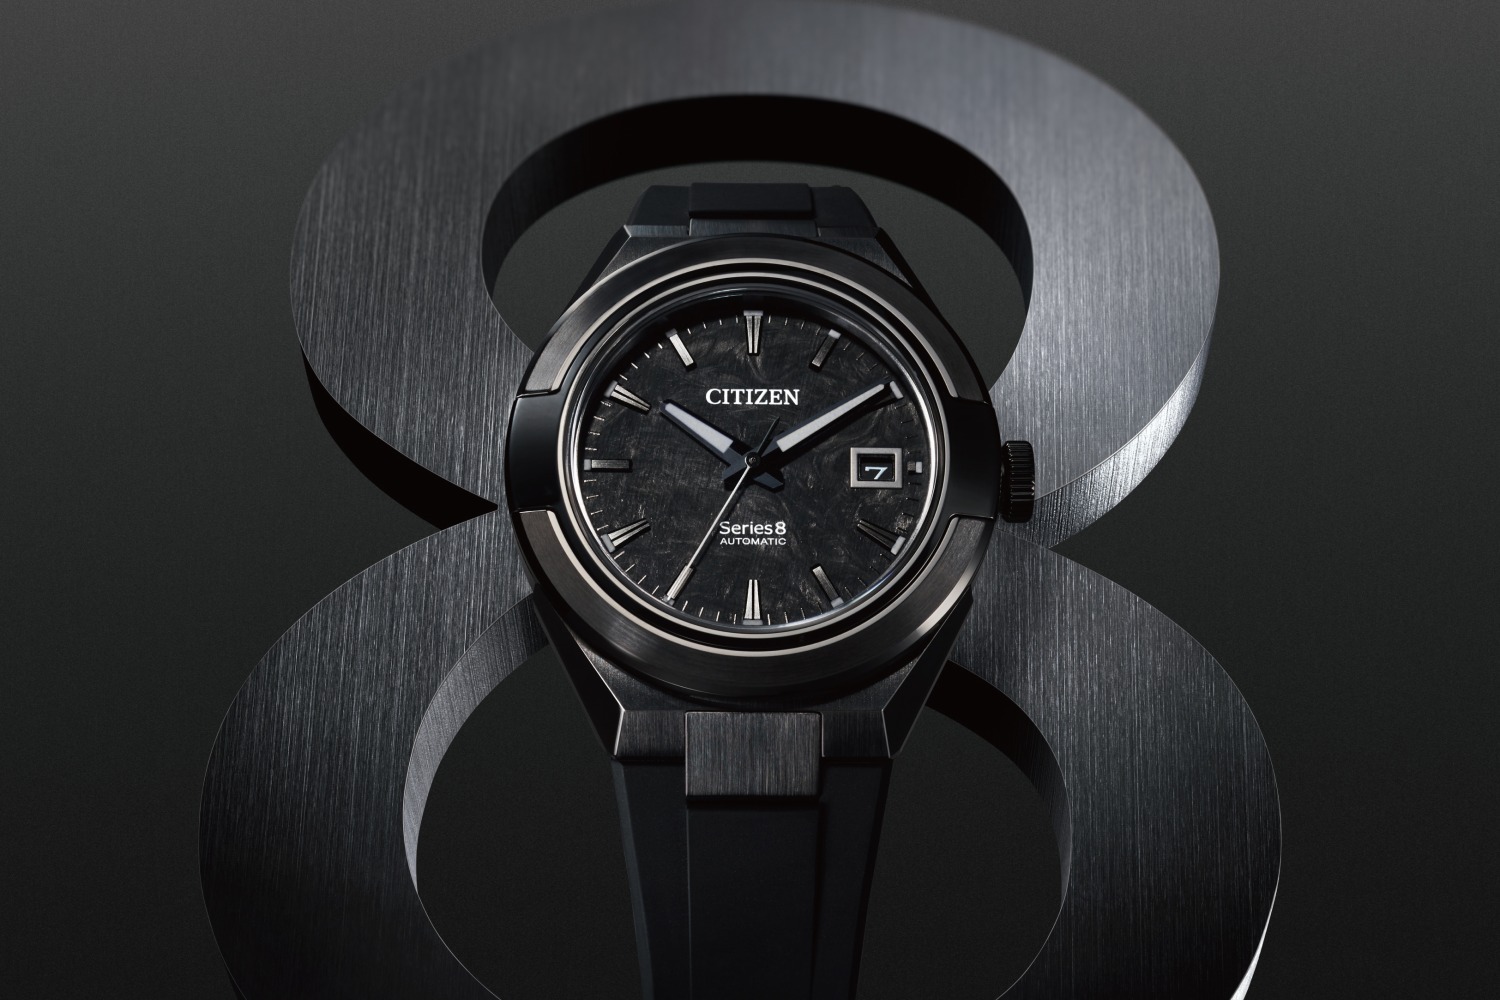 シチズン シリーズエイト“オールブラック”の限定腕時計、初の 